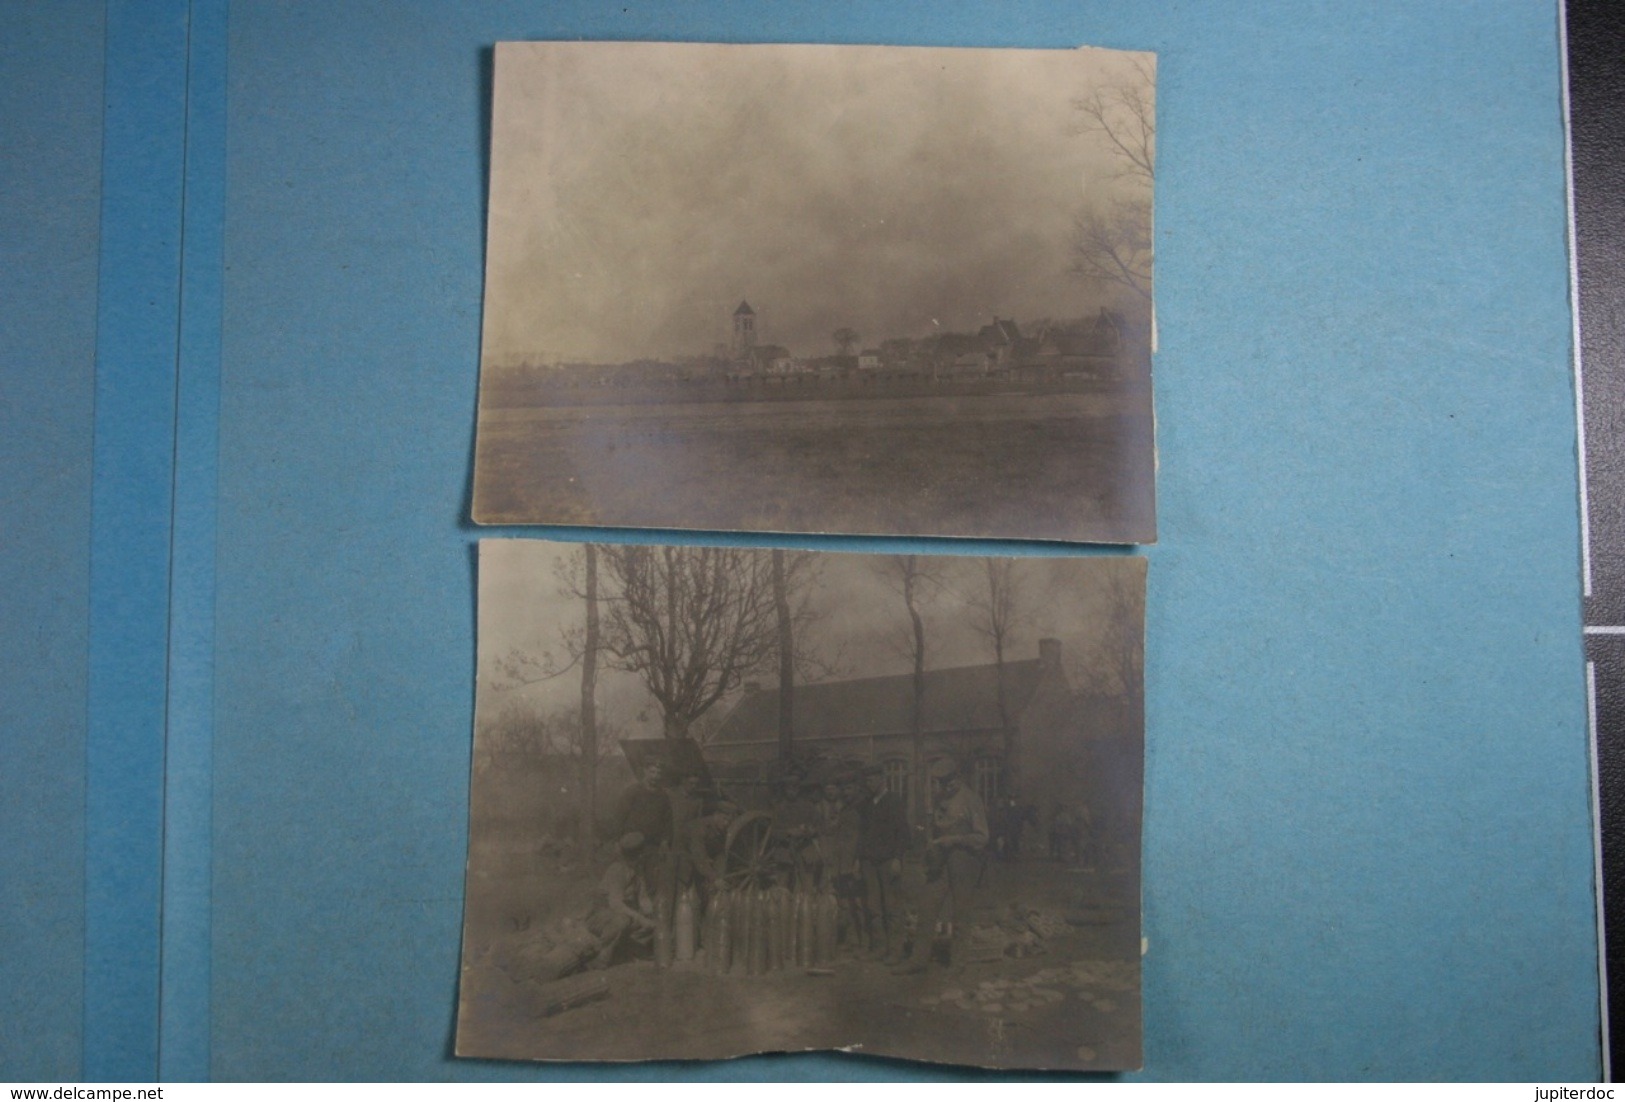 4 Photos De Flers D'un Soldat Allemand En 1915 Et La Lettre Qui Les Accompagnait - Guerre, Militaire